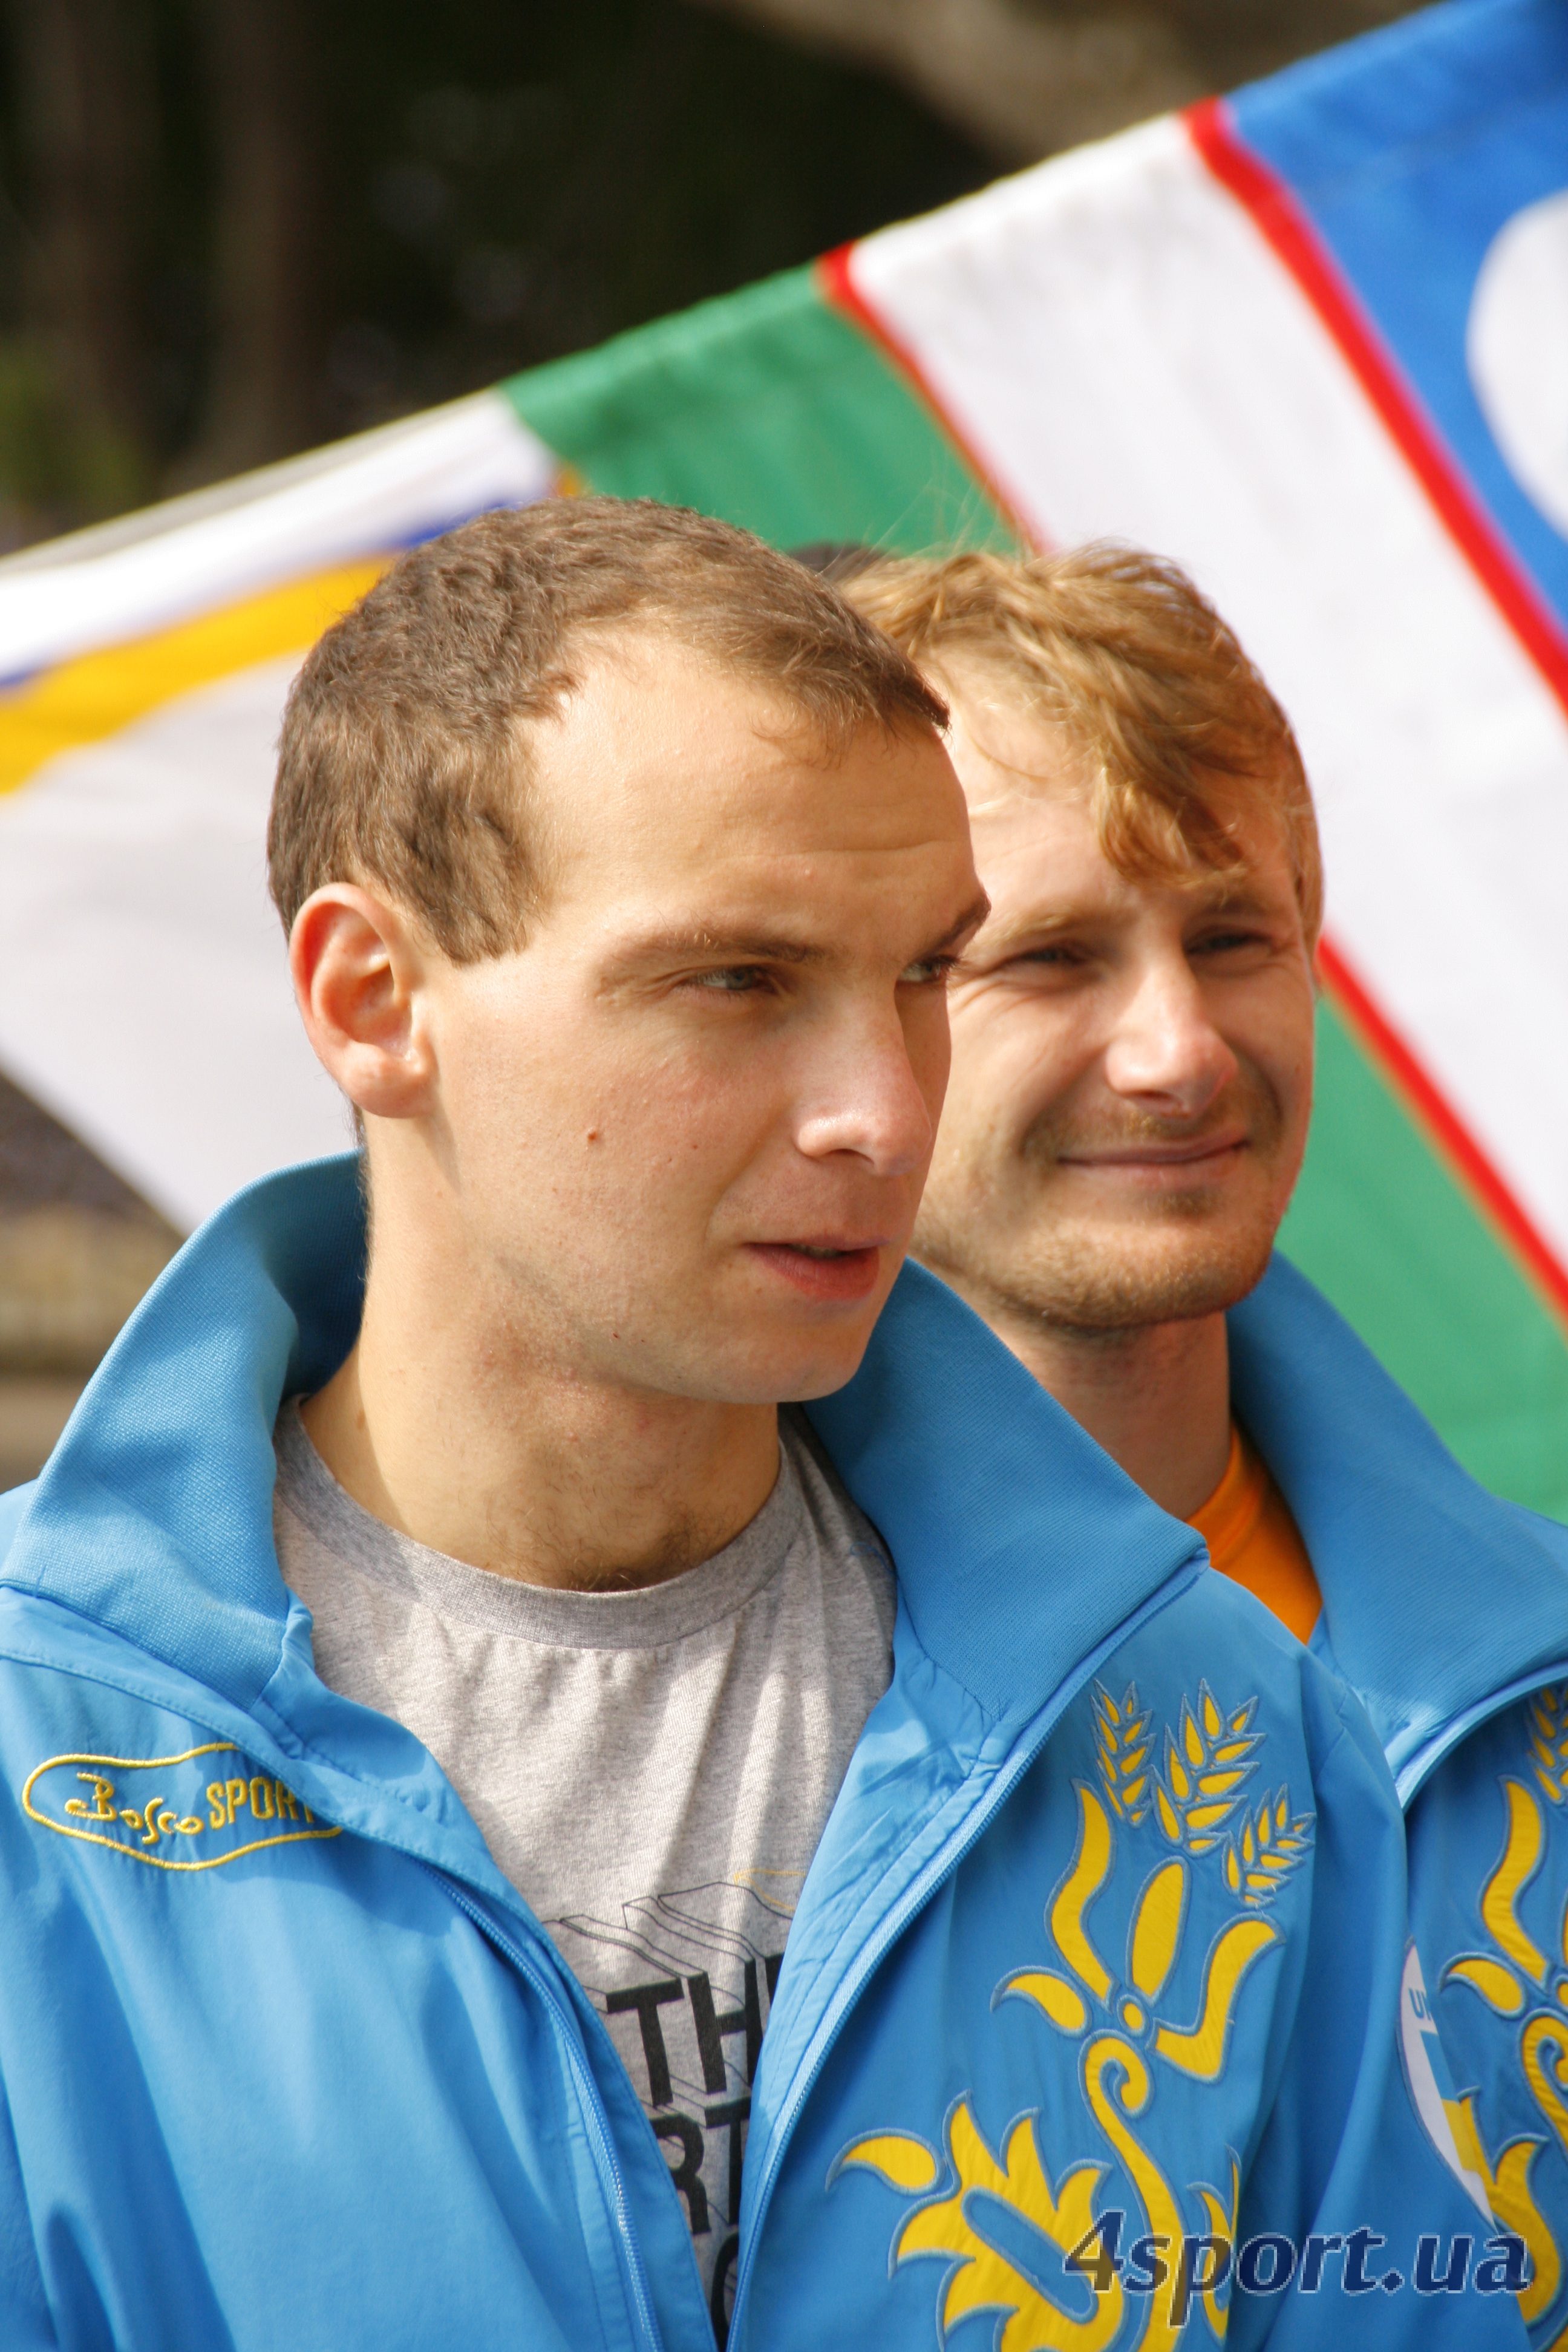 Чемпионат Мира по альпинизму в скальном классе 2013 года. Фоторепортаж с награждения победителей